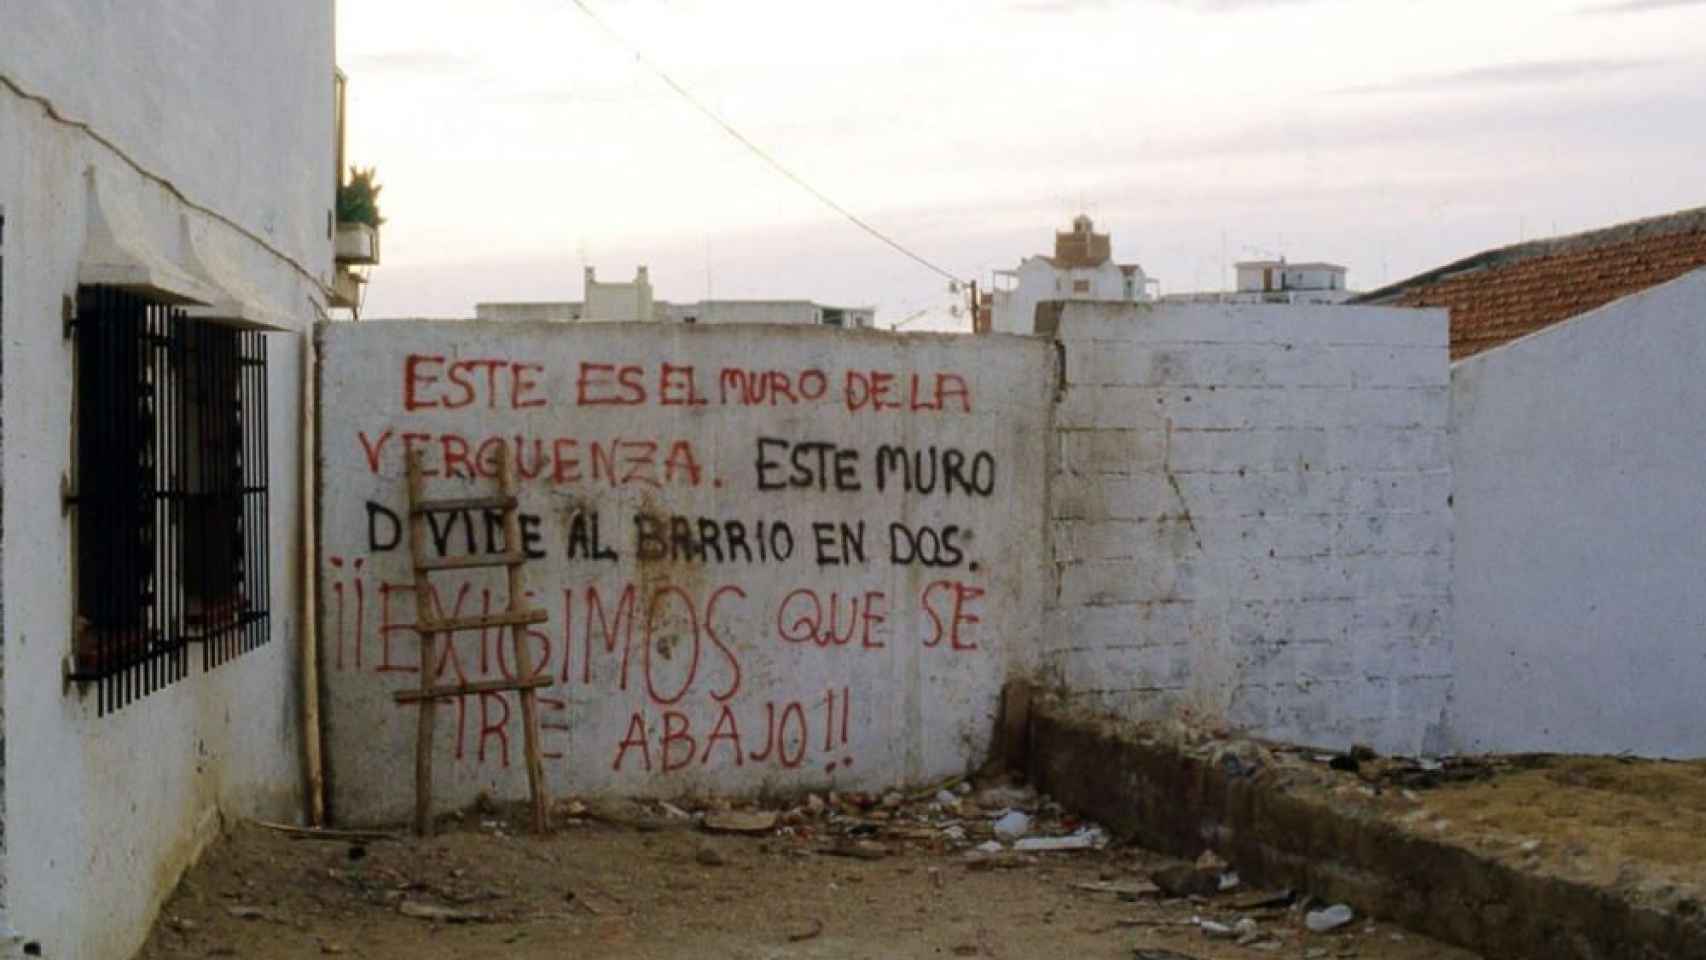 Imagen histórica de El muro de la vergüenza en El Palo, Málaga.